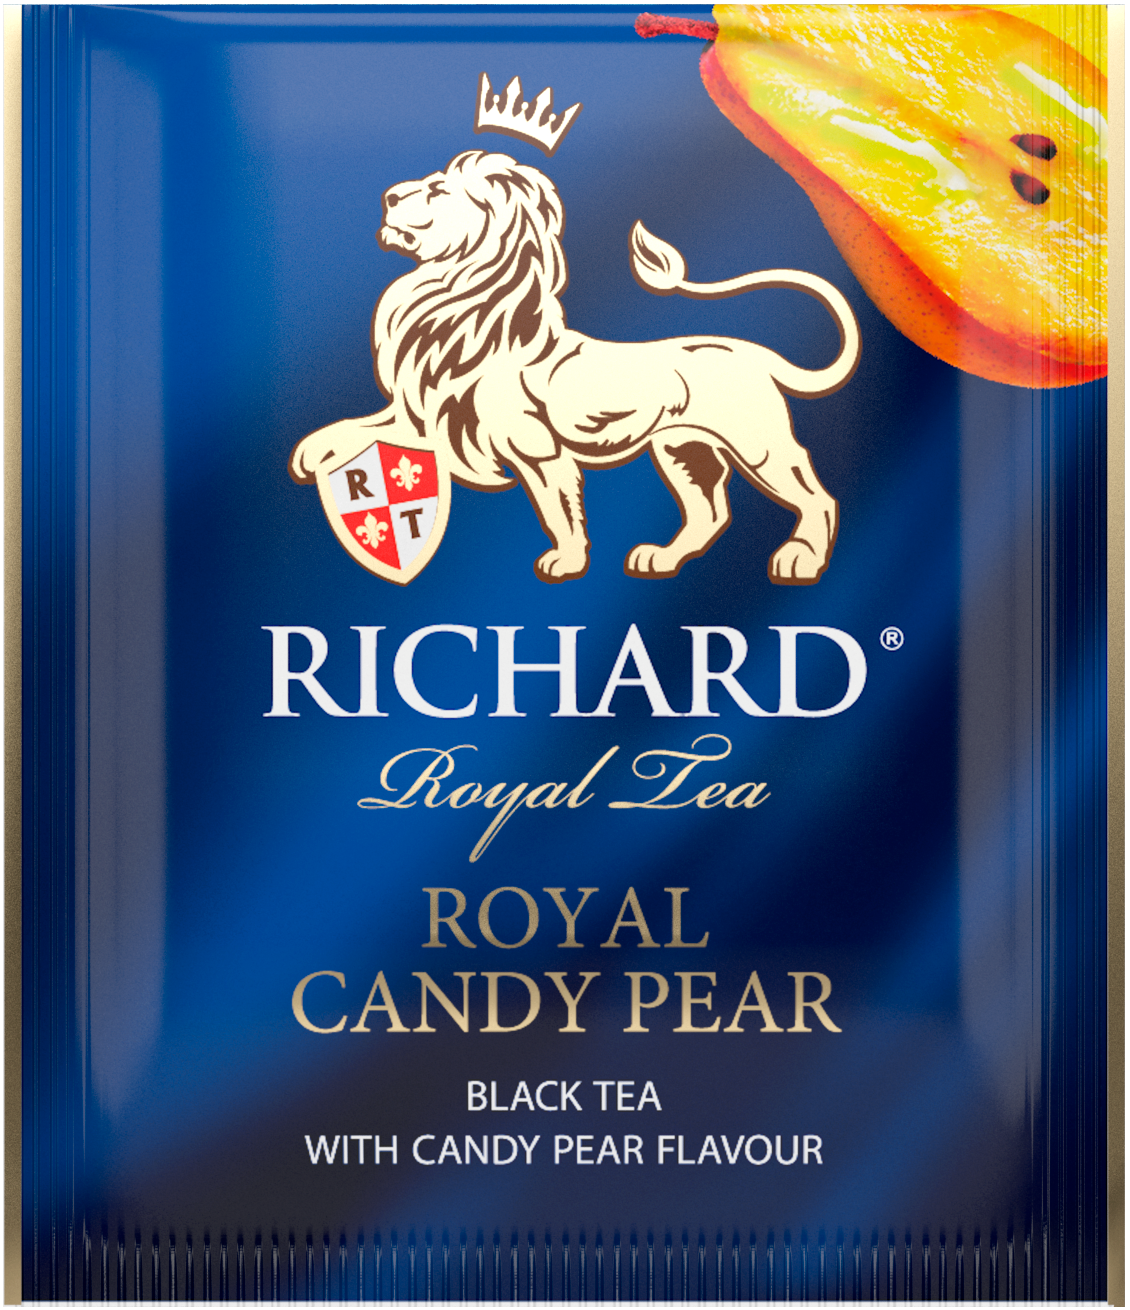 Richard Royal Cukros körte, ízesített fekete tea, filteres. 37,5g - RichardTeavn - vásároljon a 899.00 Ft